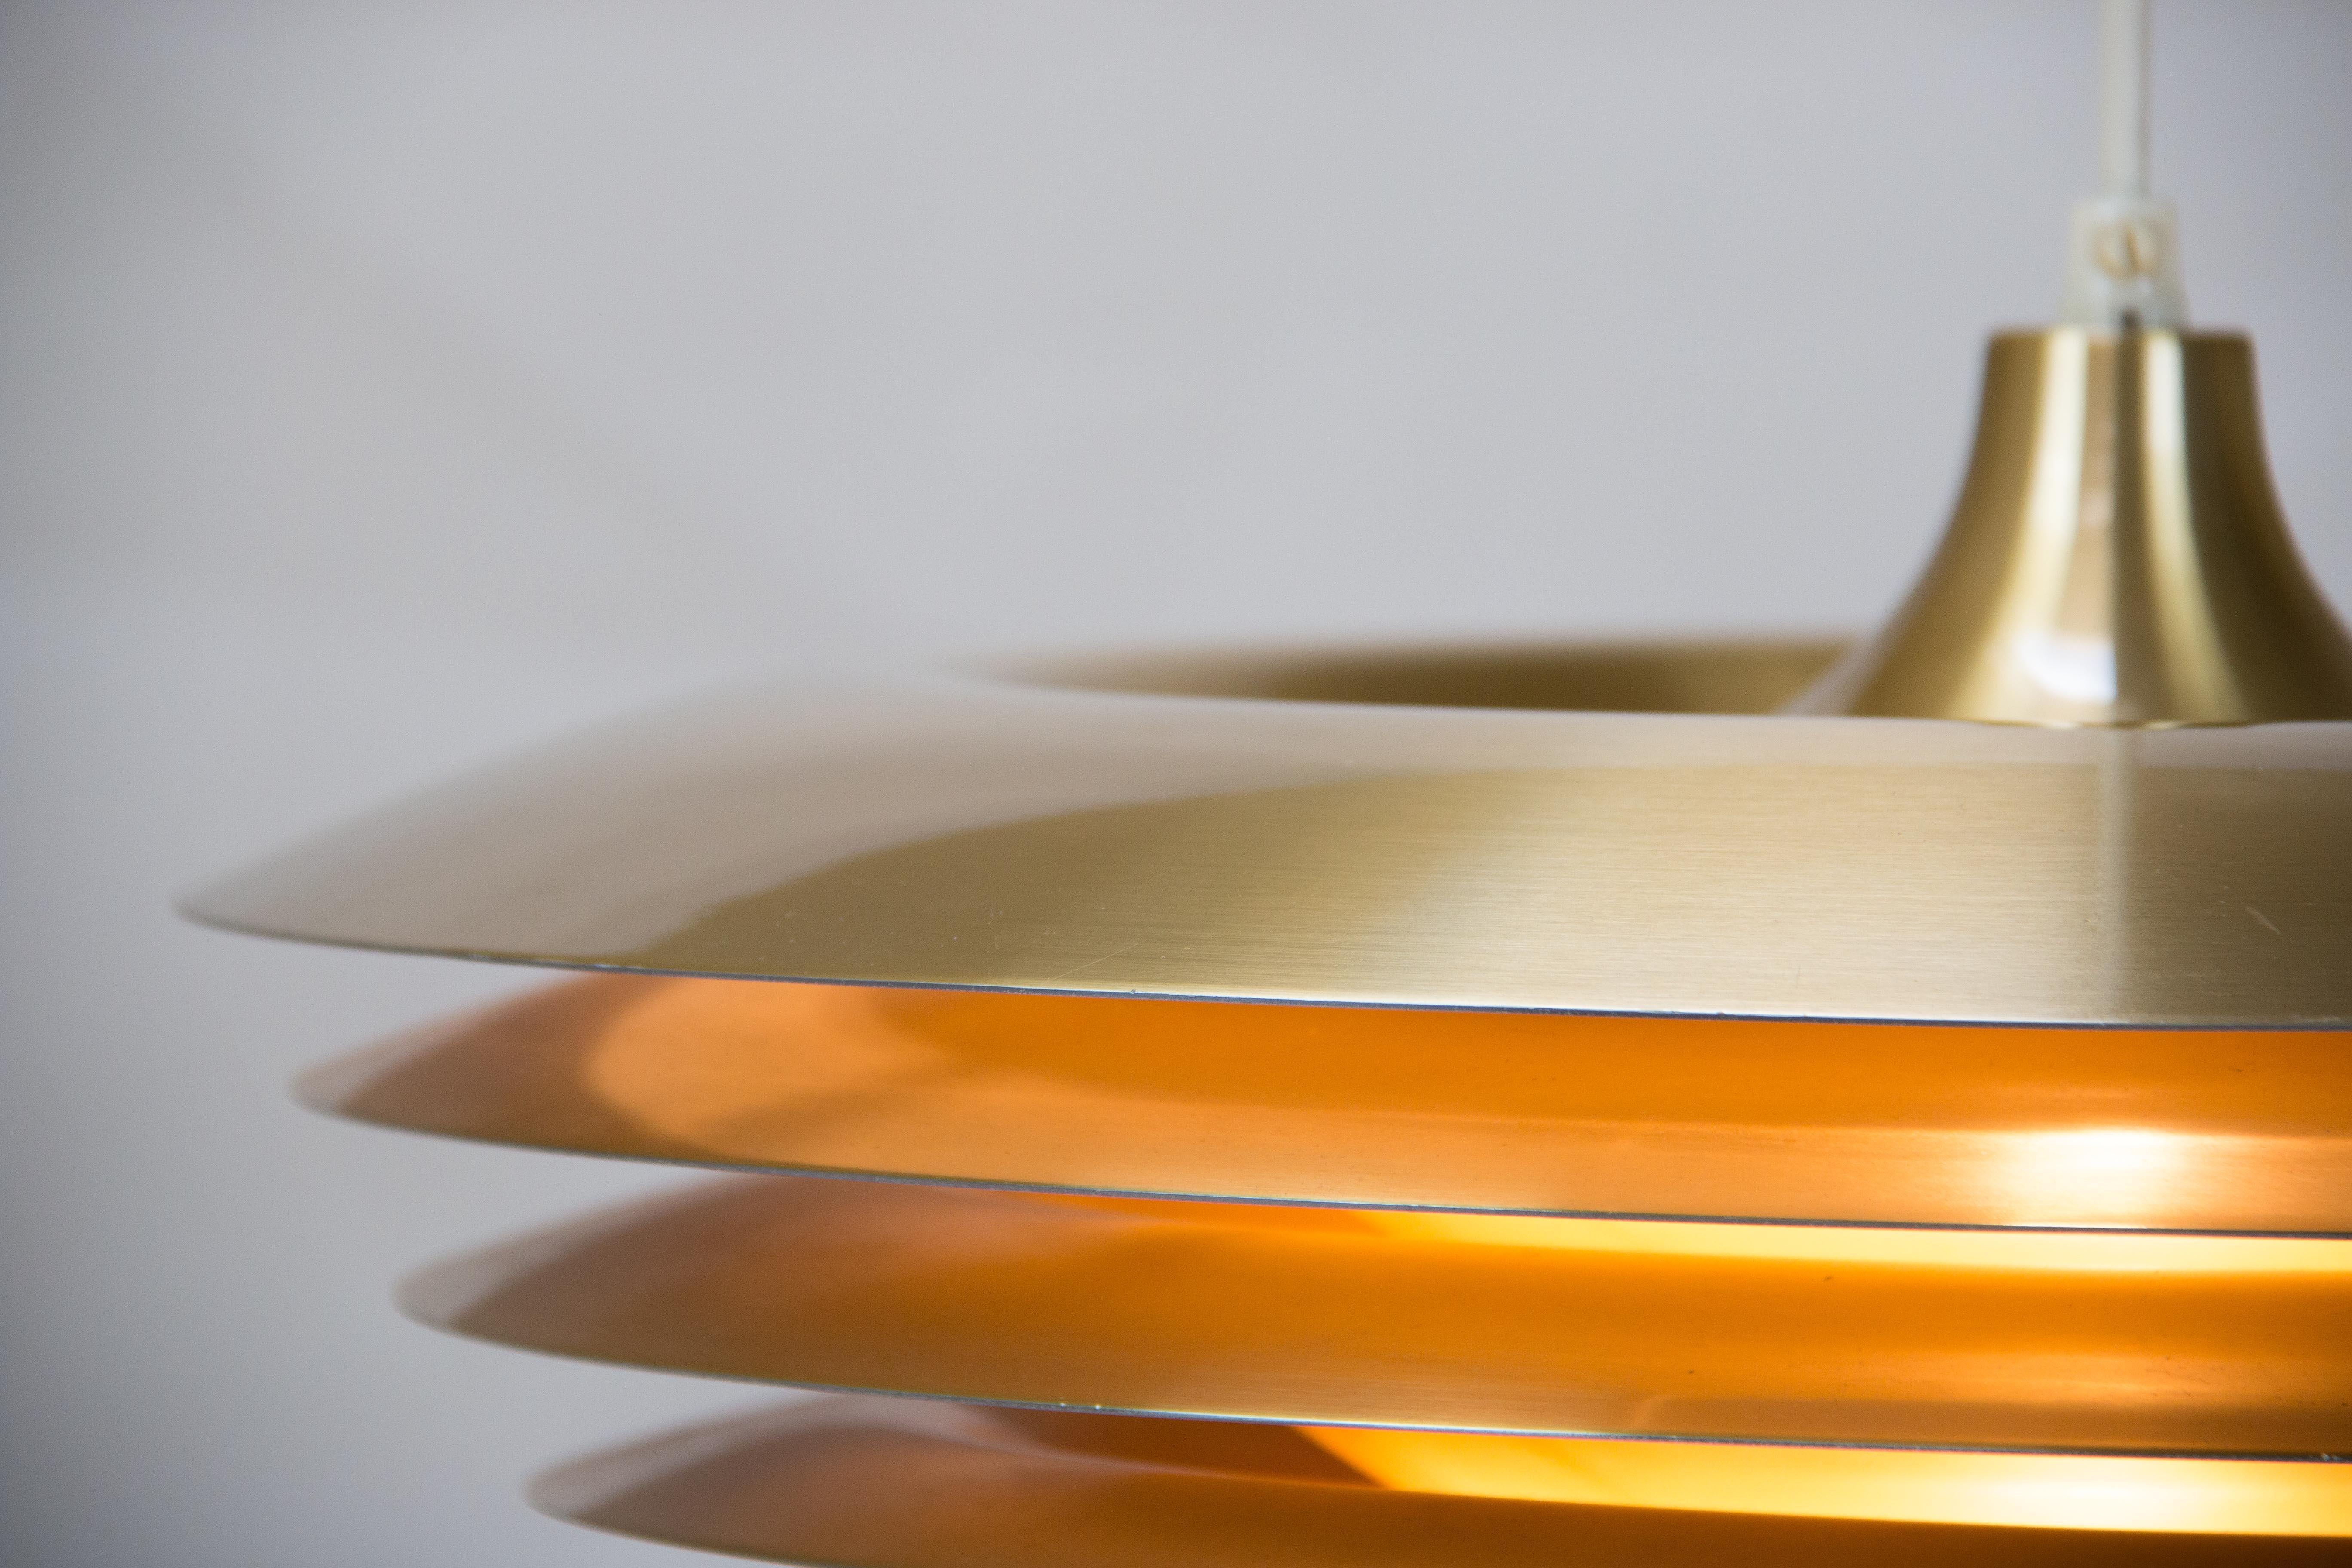 Sehr seltene Hängelampe, Hans Agnes Jakobsson Markaryd zugeschrieben
4 Farbtöne in verschiedenen Größen 
Sehr gemütliches Licht
Die Lampe kommt mit neuem Textilkabel
eine E27-Fassung
großer Zustand